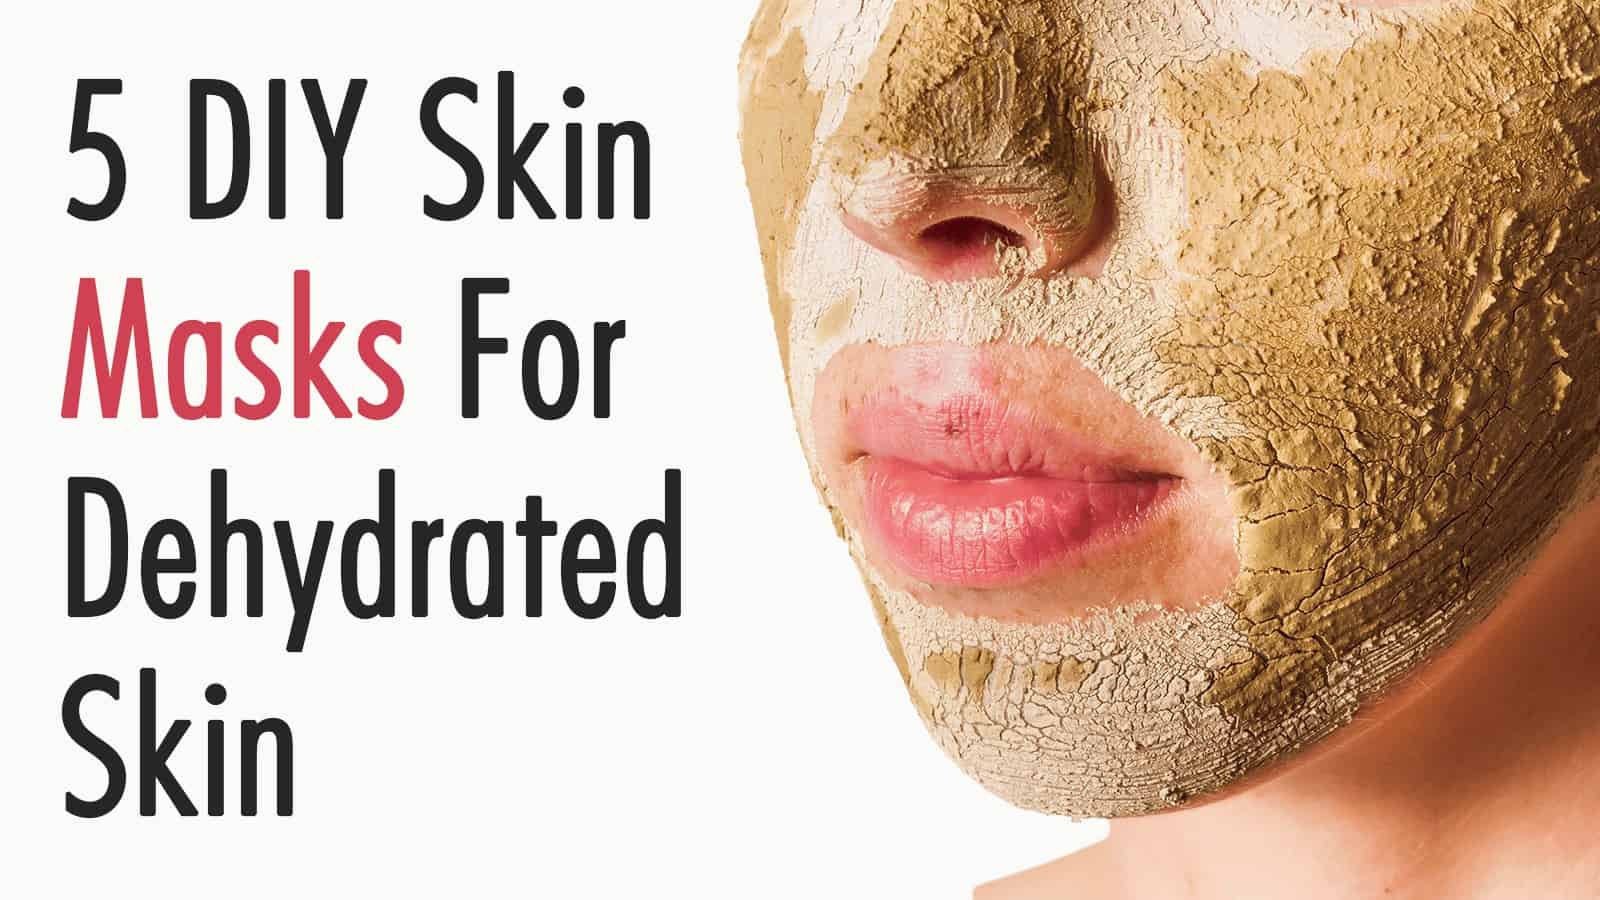 5 DIY Skin Masks For Dehydrated Skin